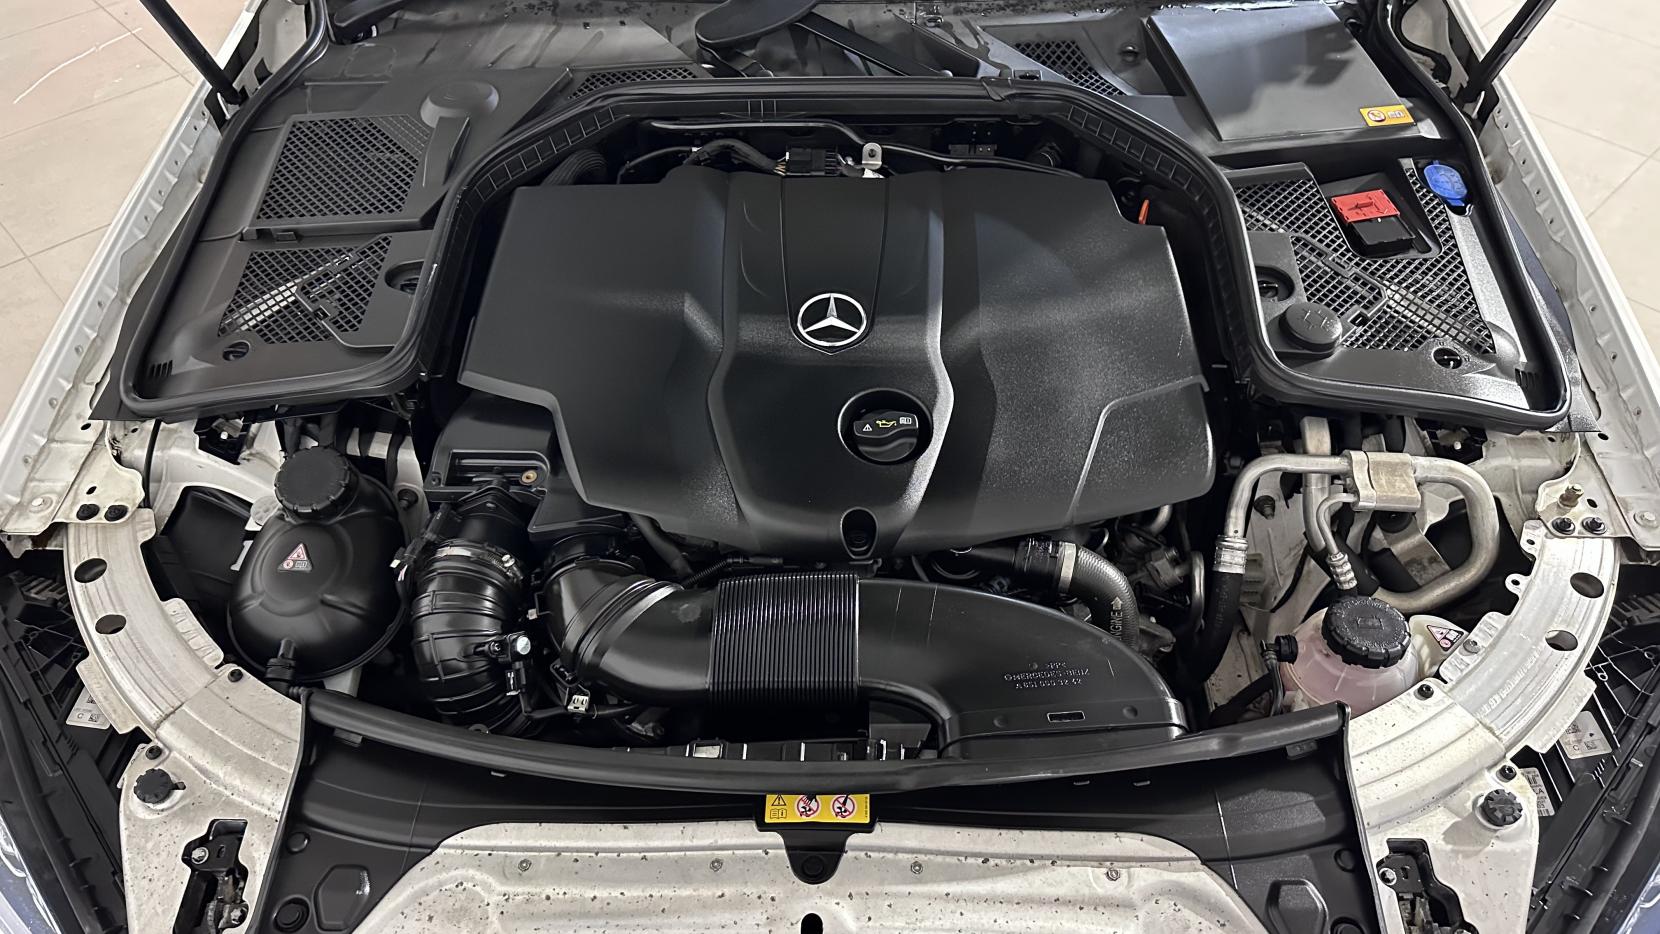 Mercedes-Benz C Class 2.1 C220d AMG Line (Premium Plus) Saloon 4dr Diesel 7G-Tronic+ Euro 6 (s/s) (170 ps)